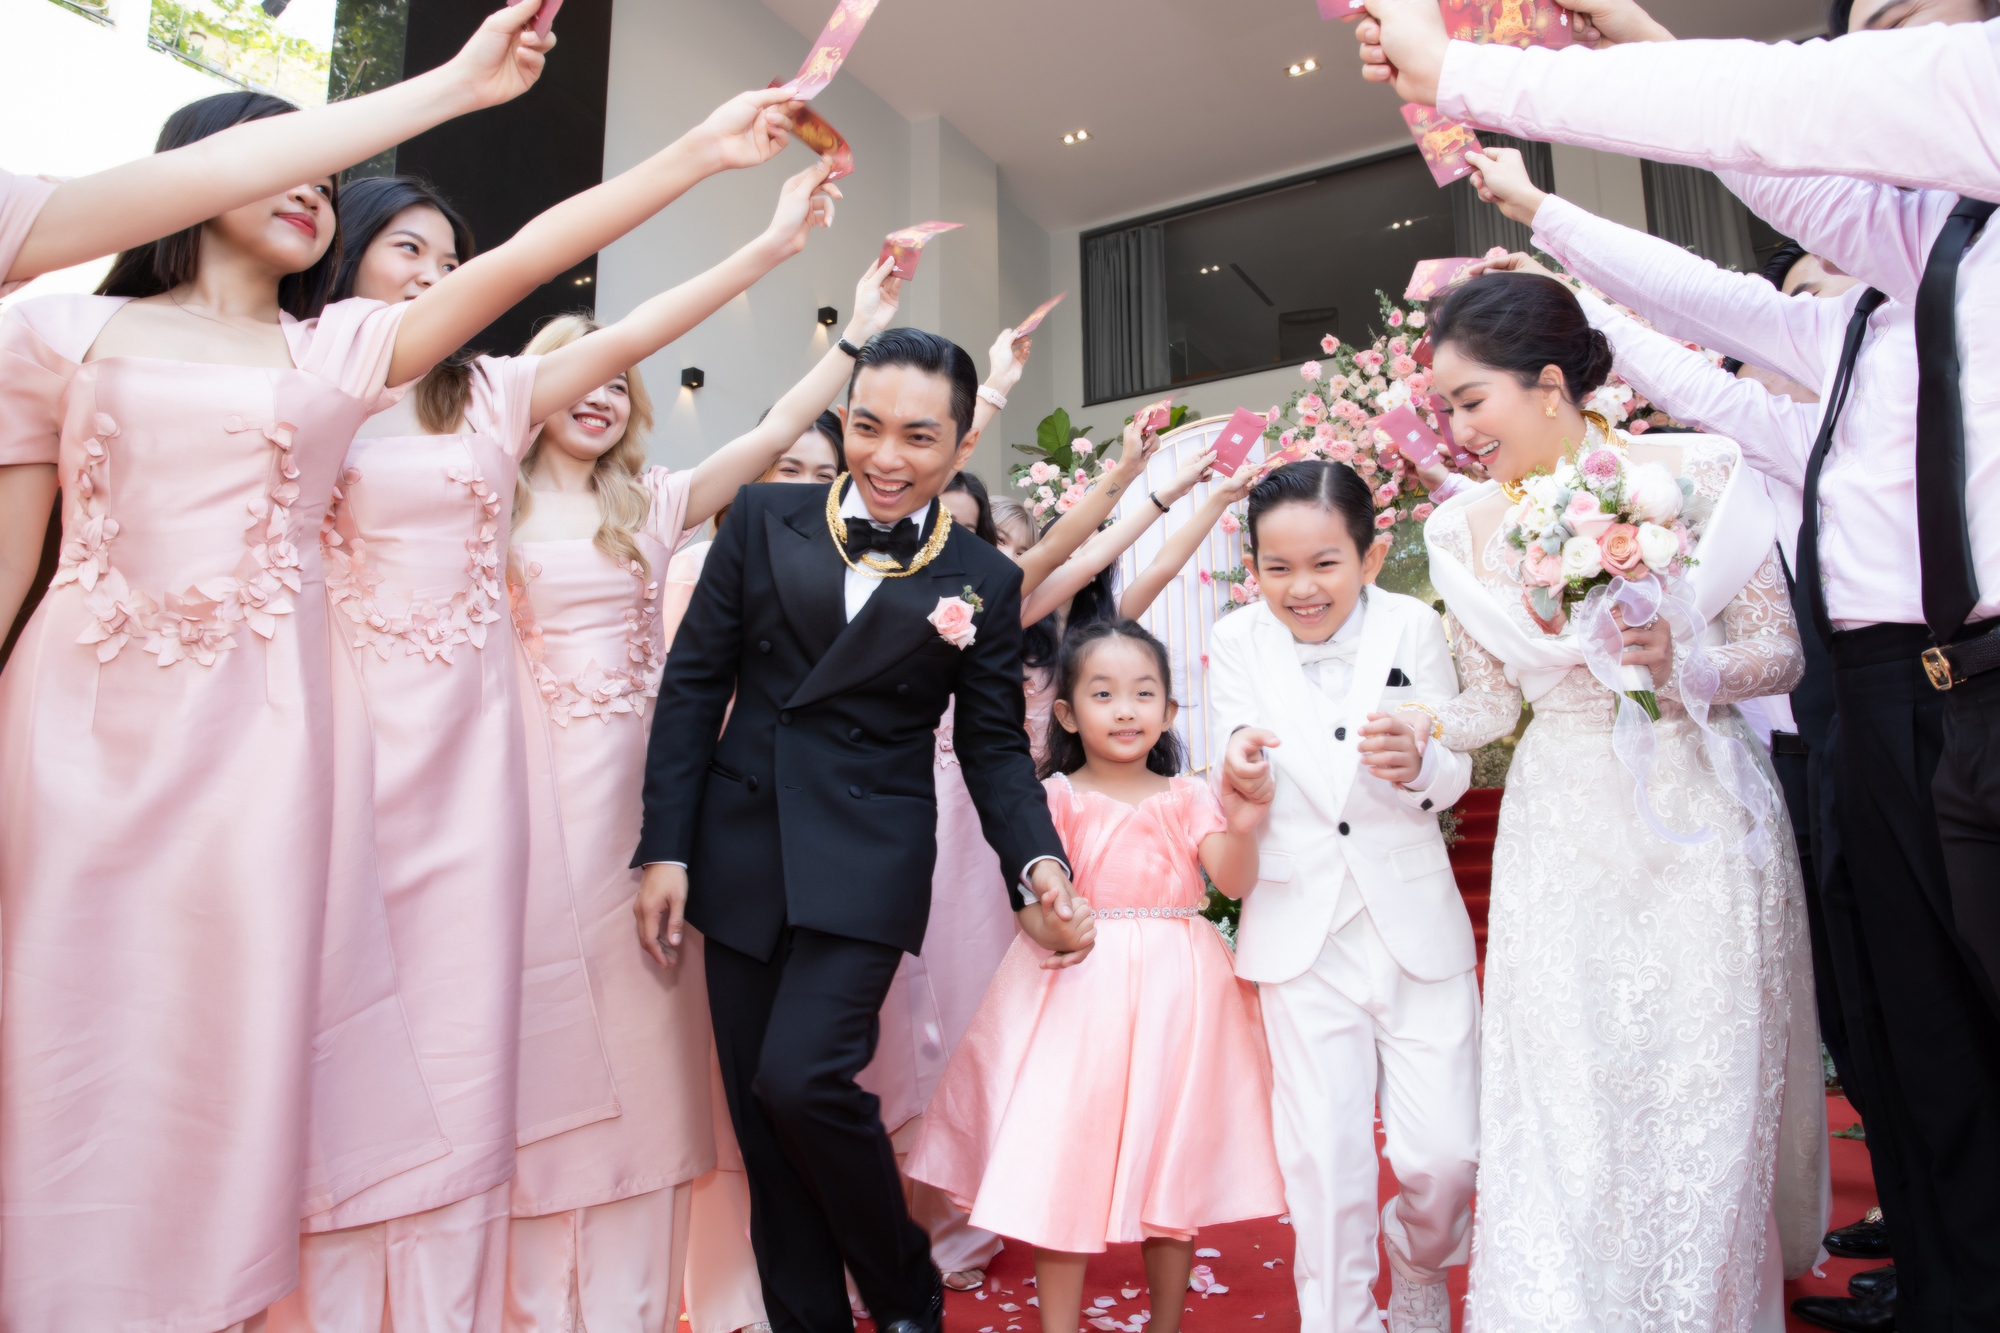 Biểu cảm đáng yêu của hai nhóc tì nhà Phan Hiển và Khánh Thi trong lễ thành hôn của bố mẹ - Ảnh 1.